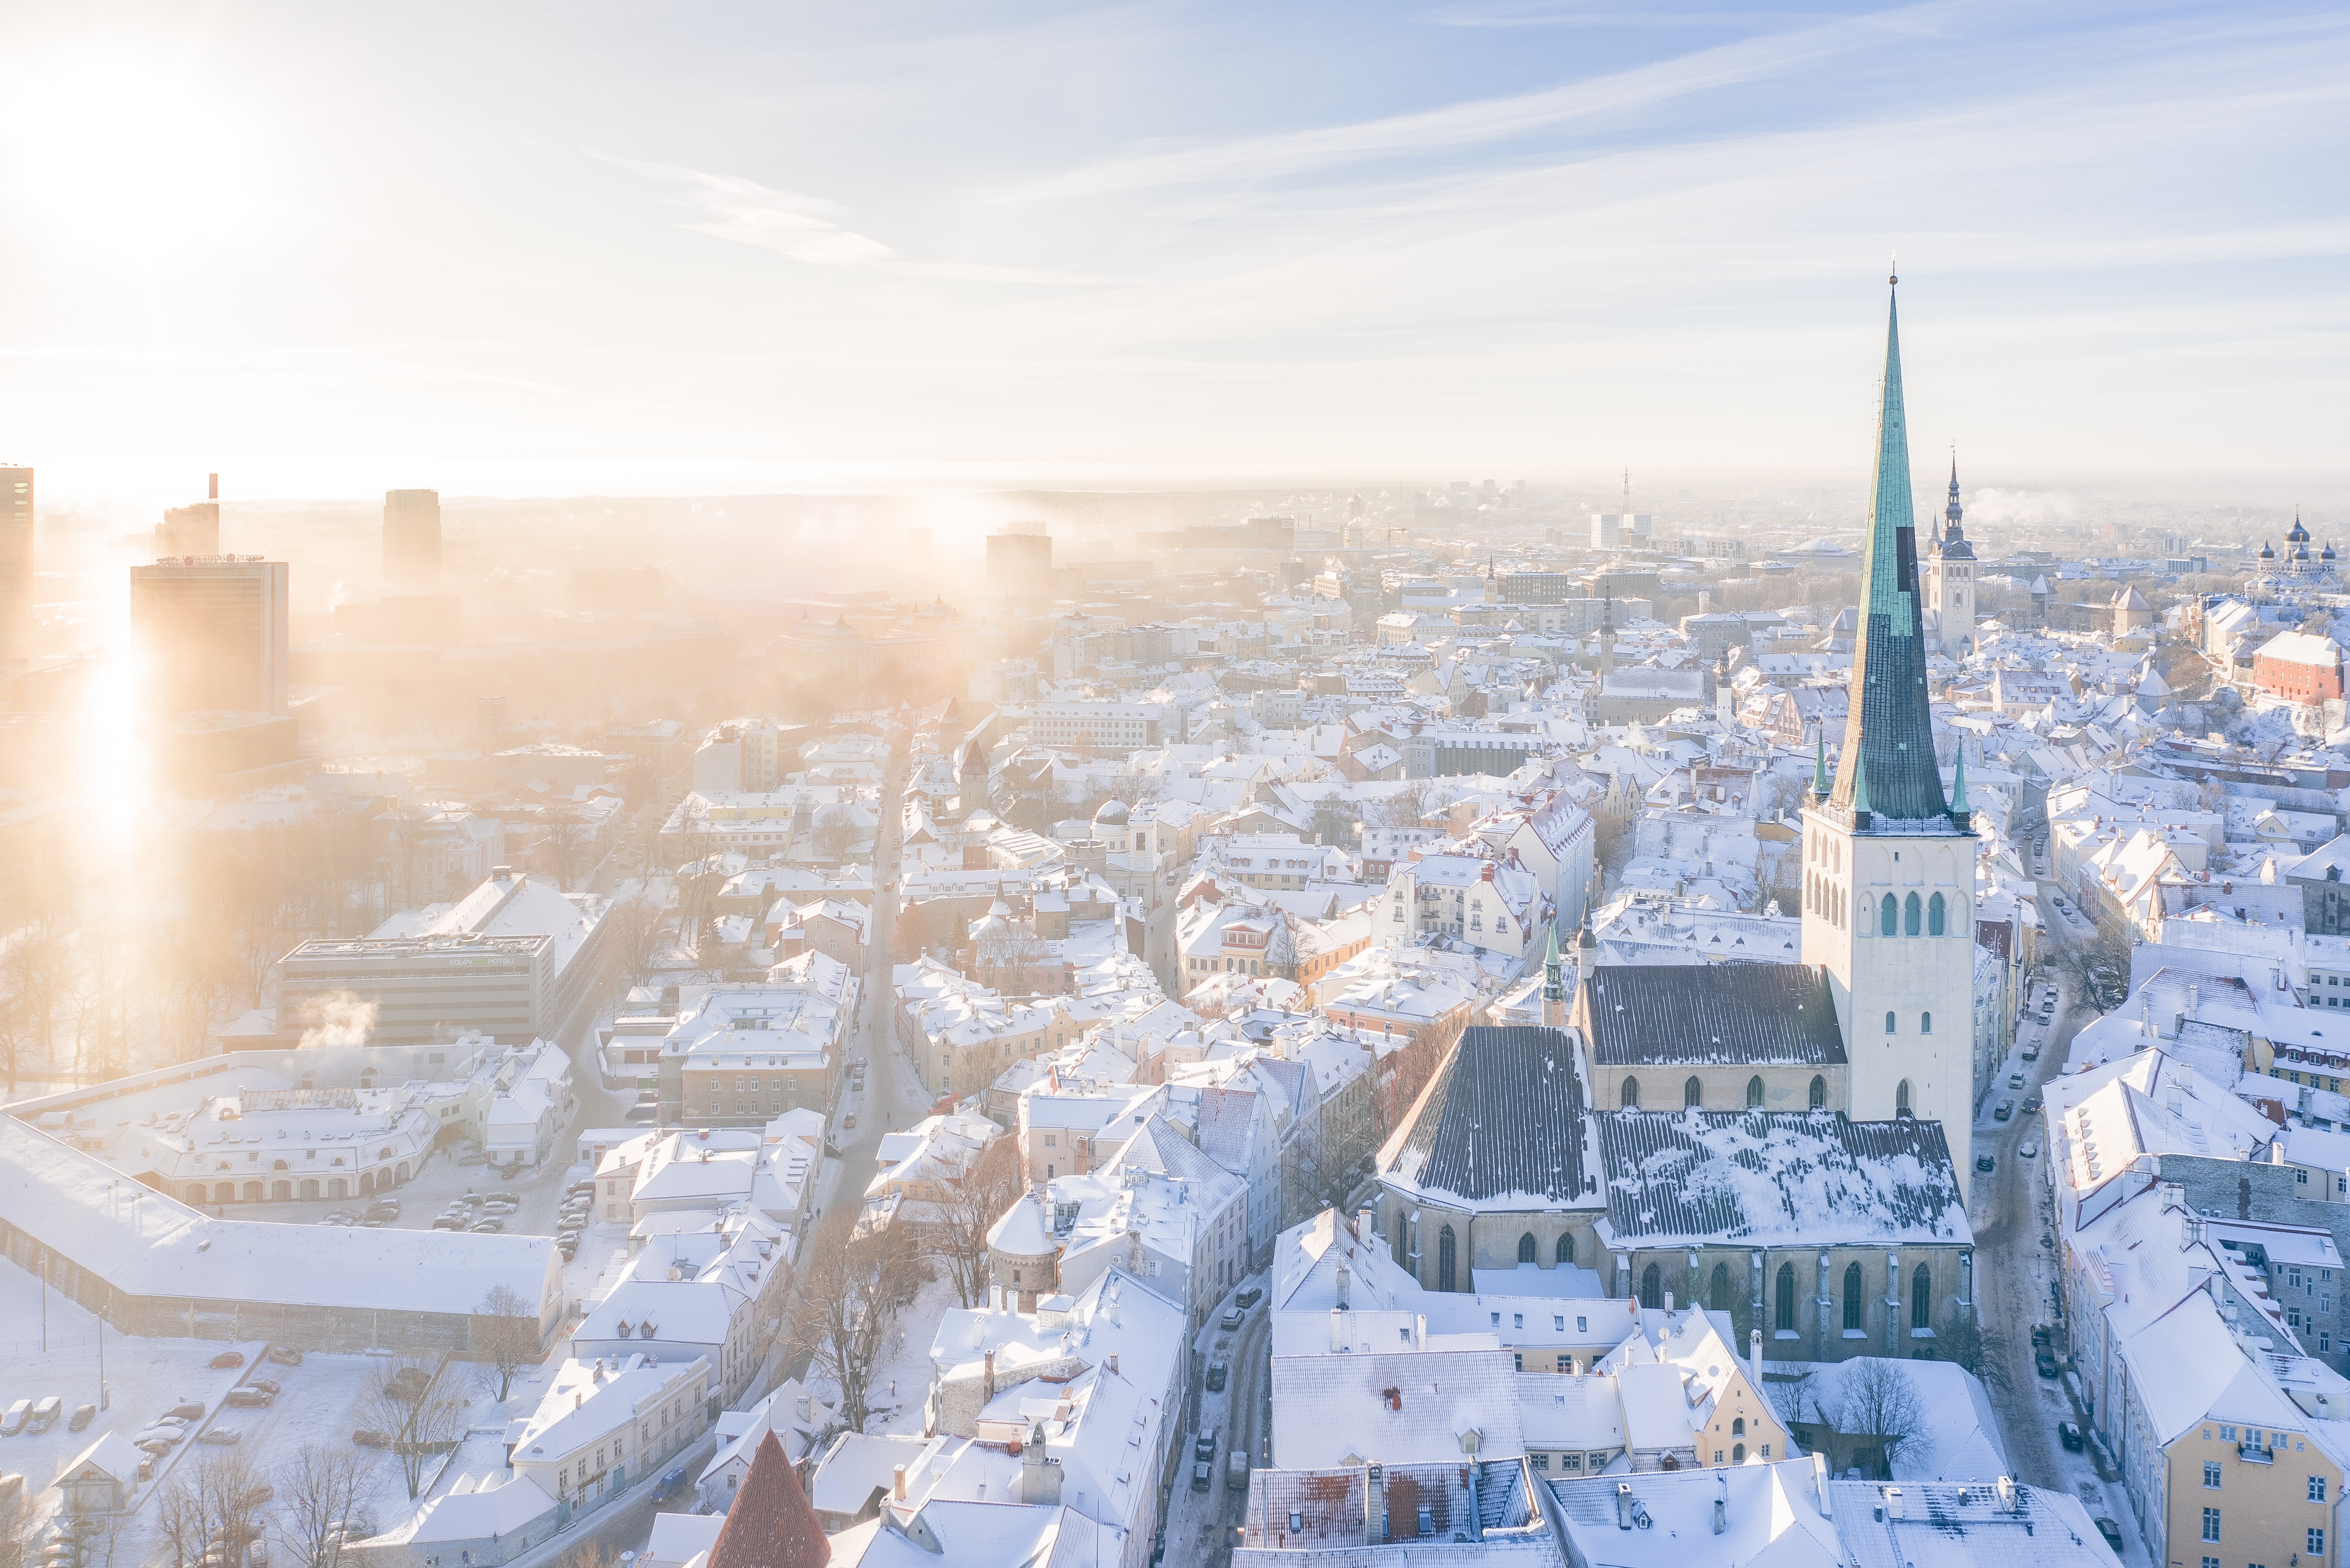 A view of Tallinn in Estonia.